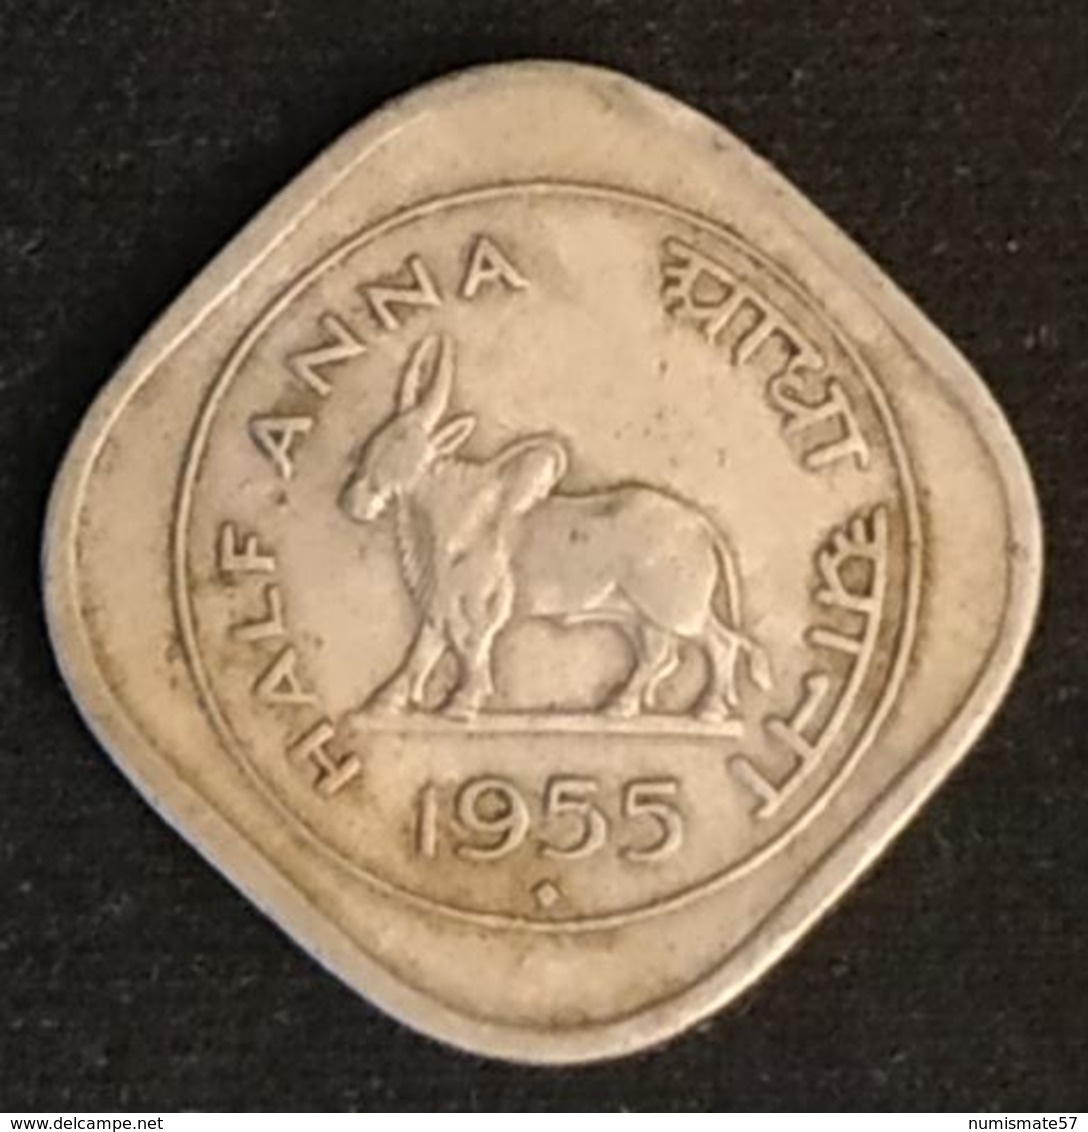 INDE - INDIA - ½ - 1/2 - HALF ANNA 1955 - KM 2.2 - ( Vache Sacrée ) - Mumbai - Indien